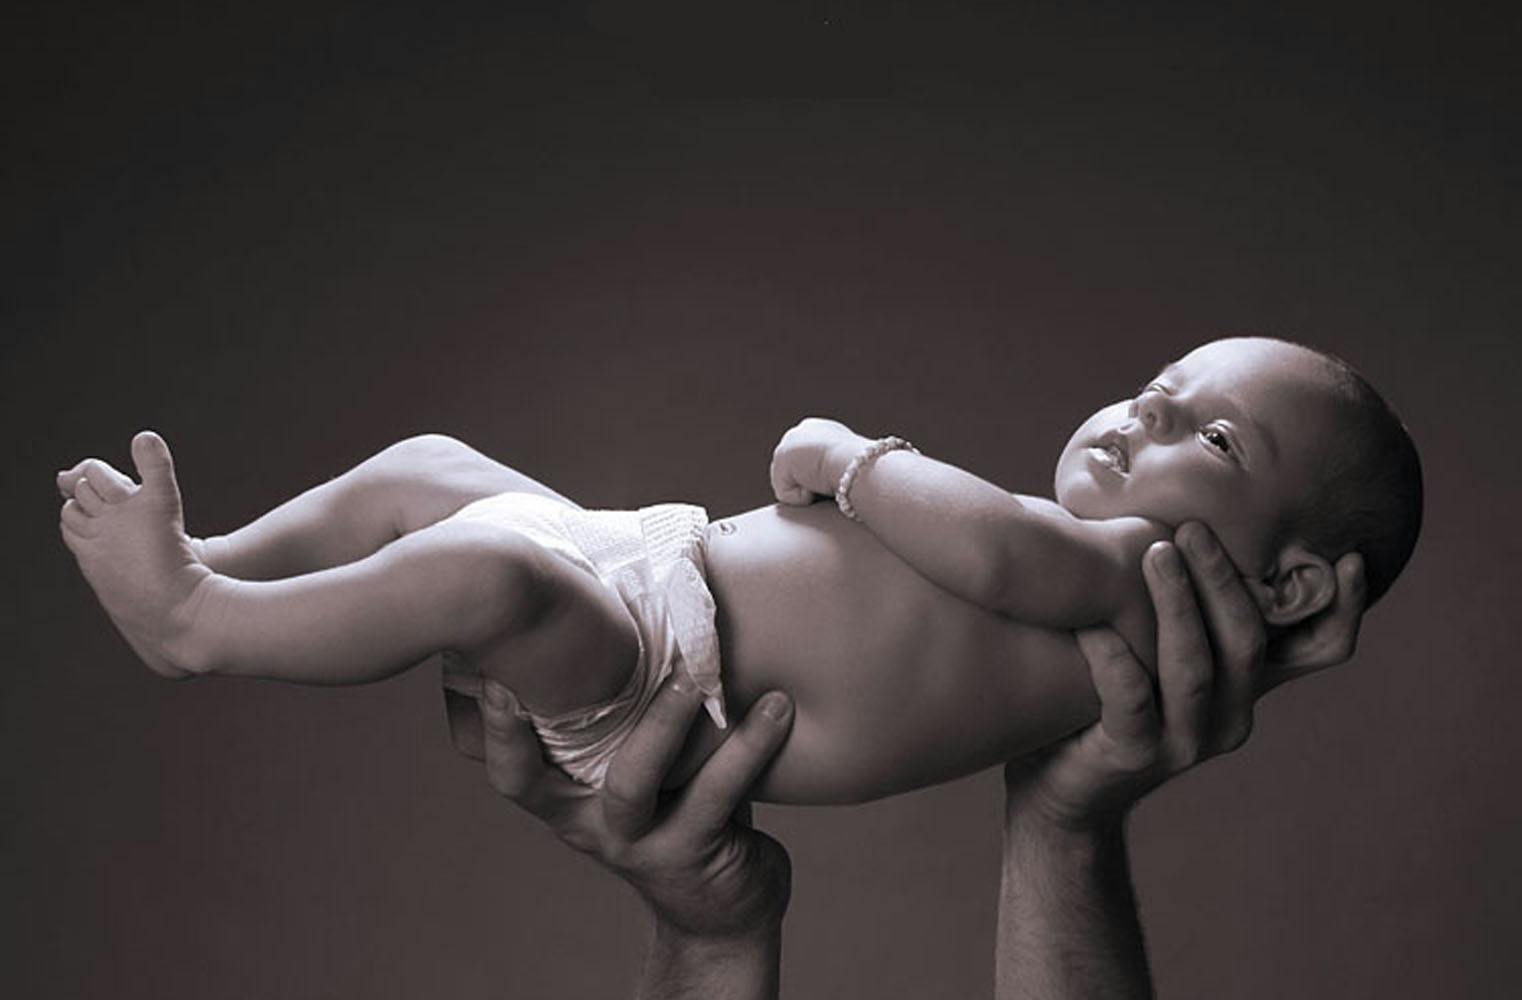 Kind & Baby Fotoshooting | mit 2 professionellen Abzügen